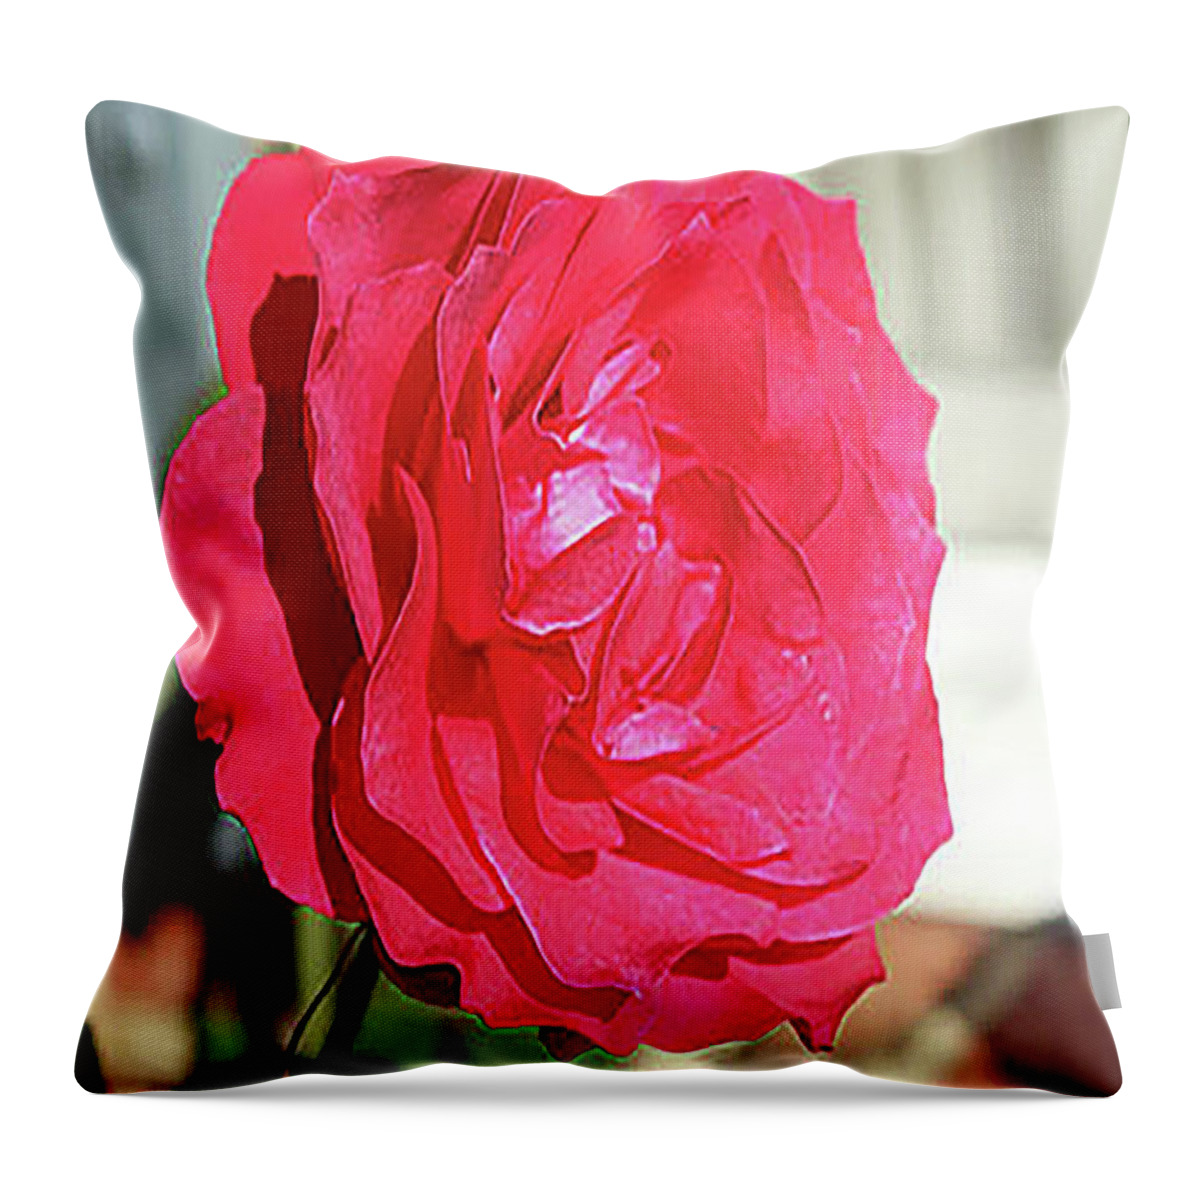 Rose Throw Pillow featuring the digital art Grandma's Rose by Linda Ritlinger